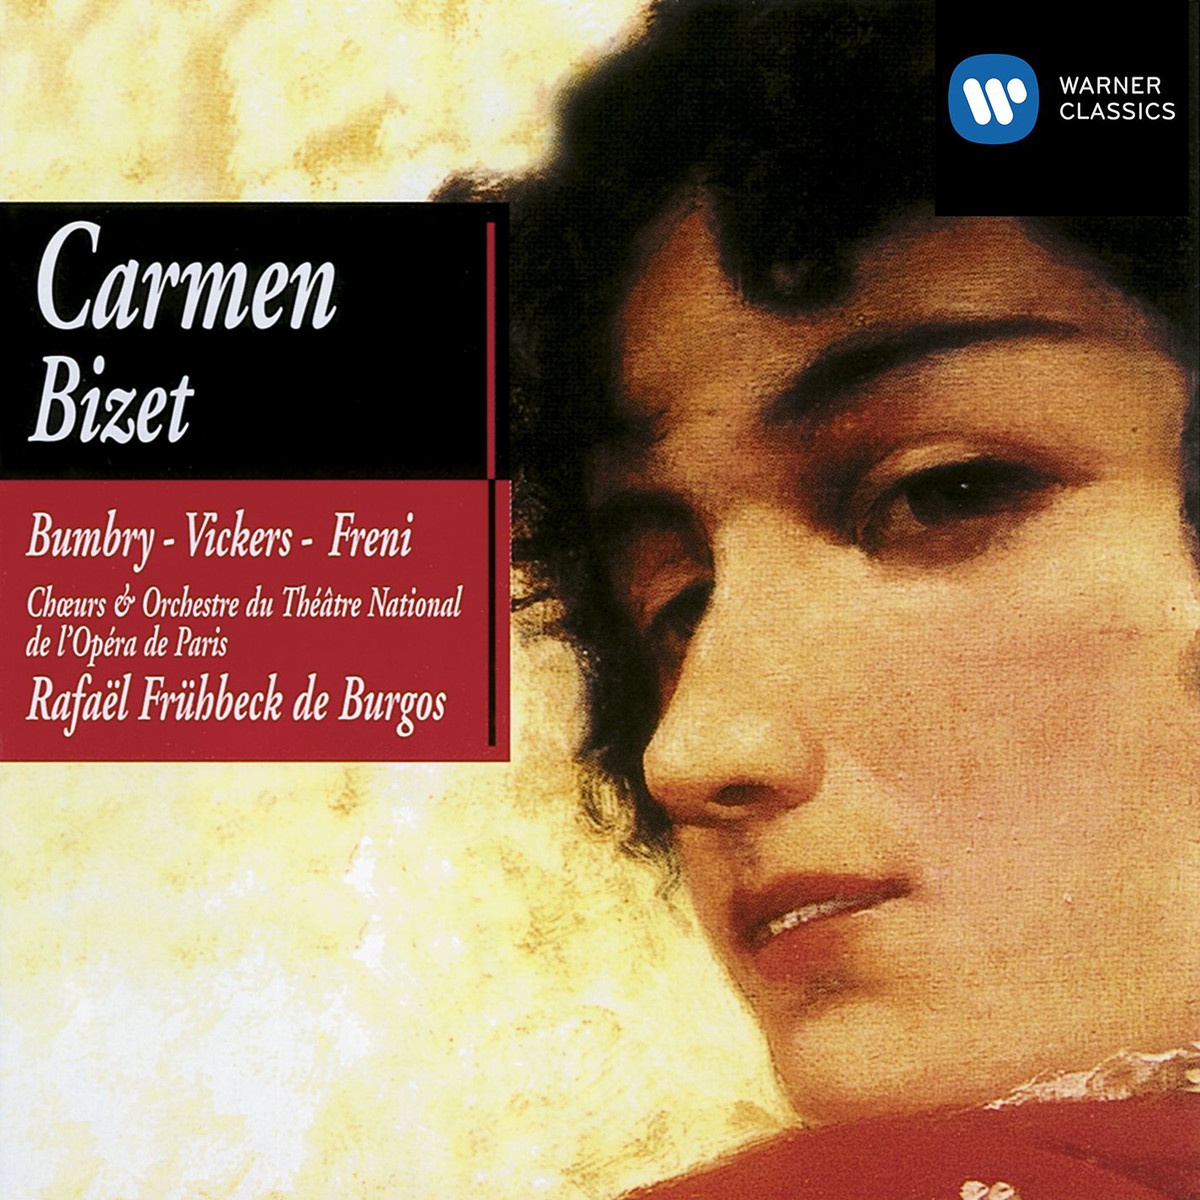 Carmen (1990 Digital Remaster), ACT 1: Sur la place, chacun place